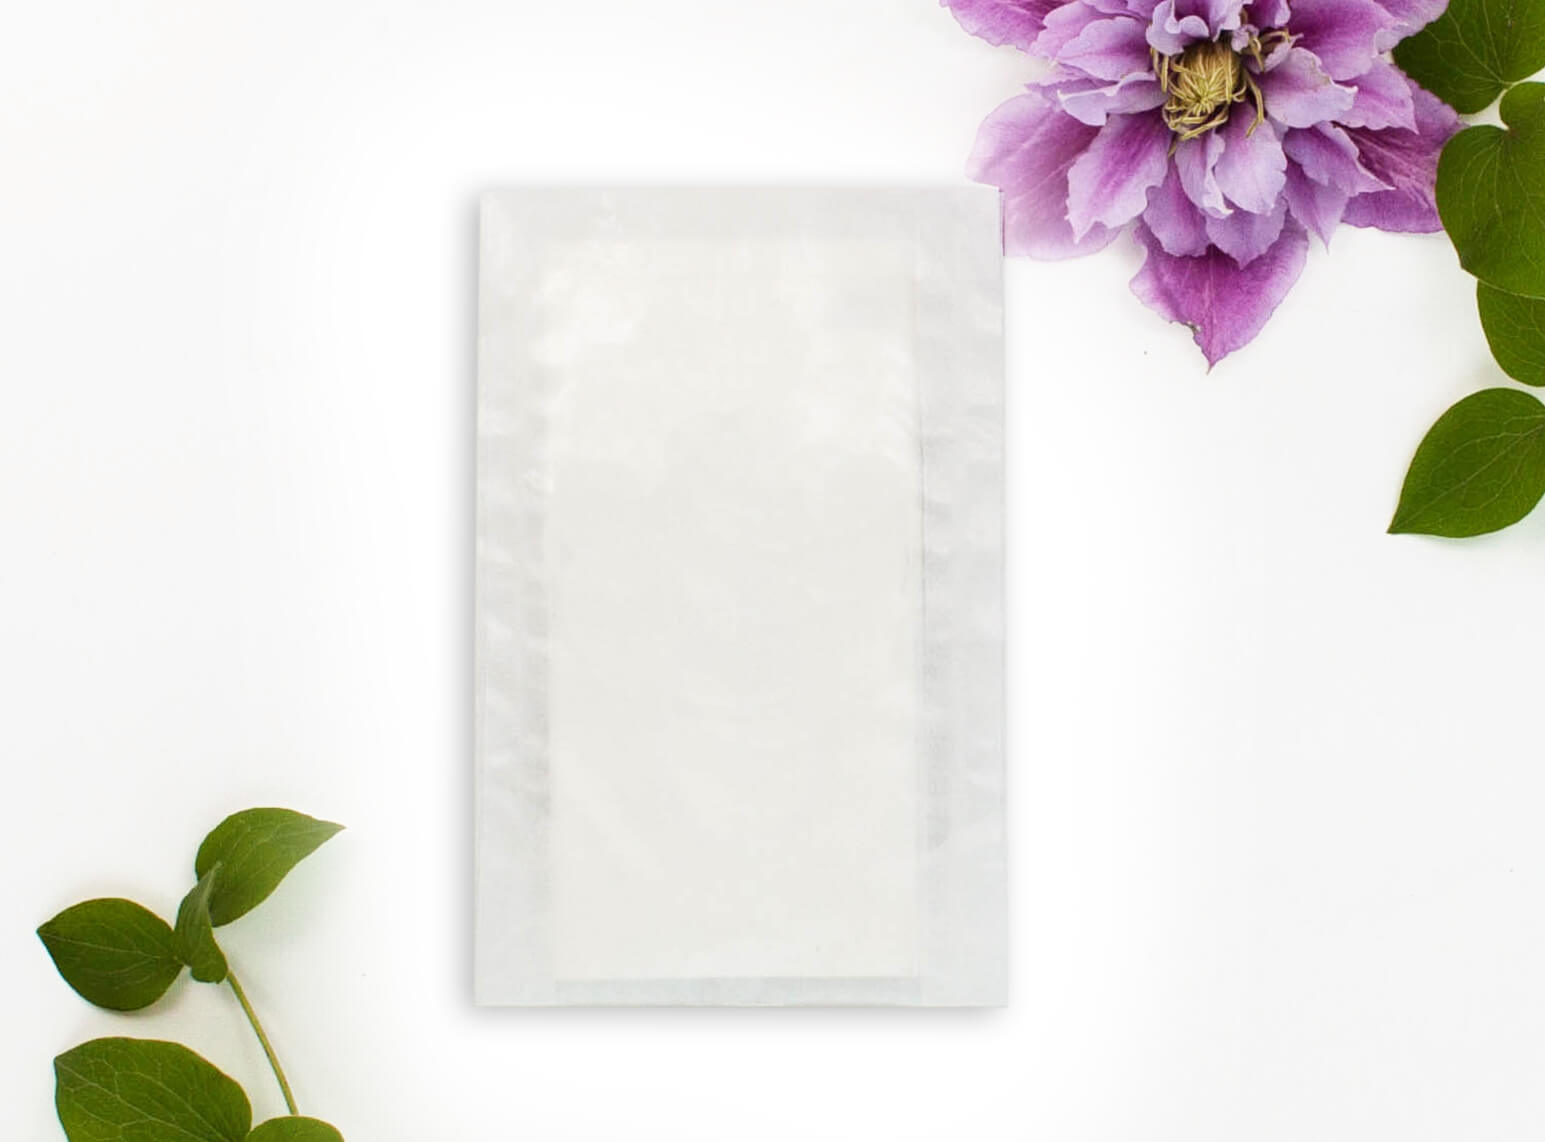 Transparente Tütchen für Taschentücher oder Blumensamen